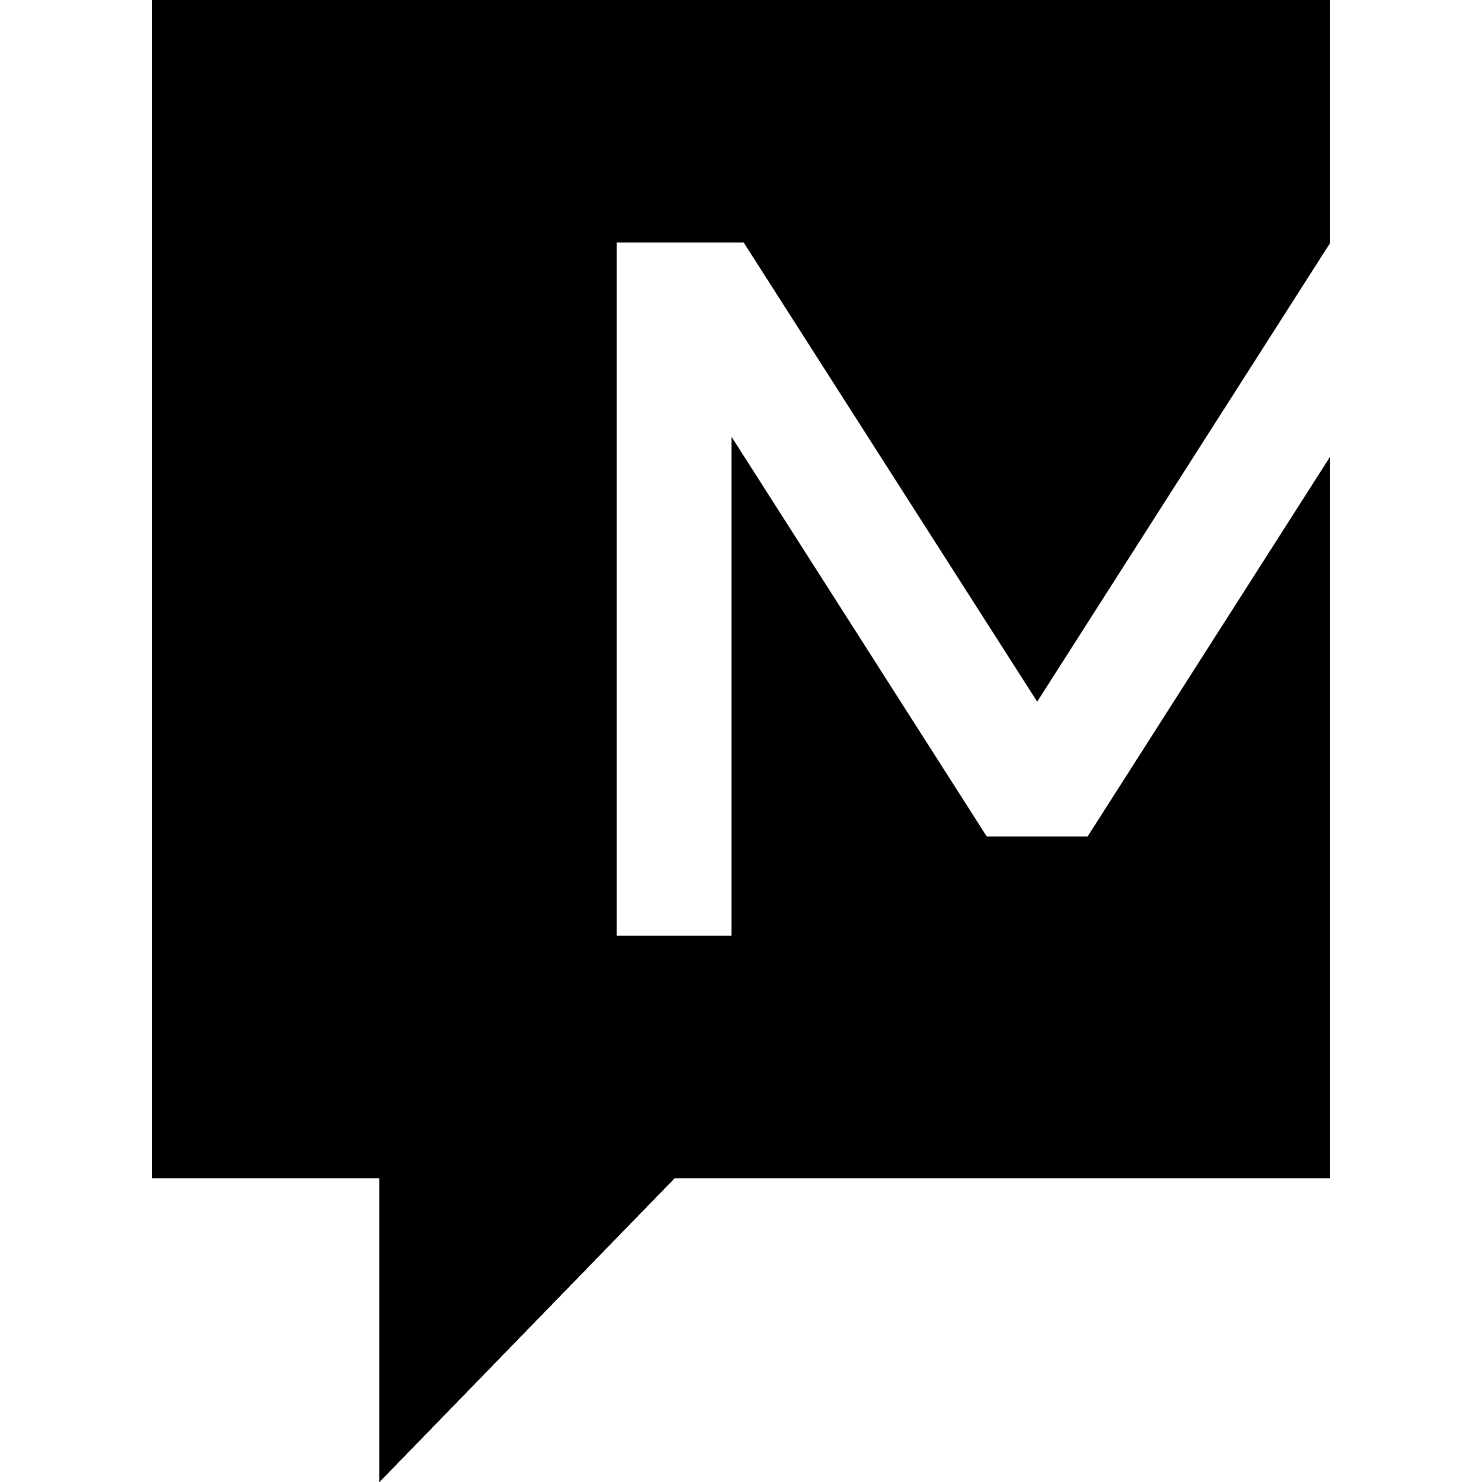 Modere Logo - Modere Social Marketers of Colorado - Highlands Ranch, CO | 303-903-4569